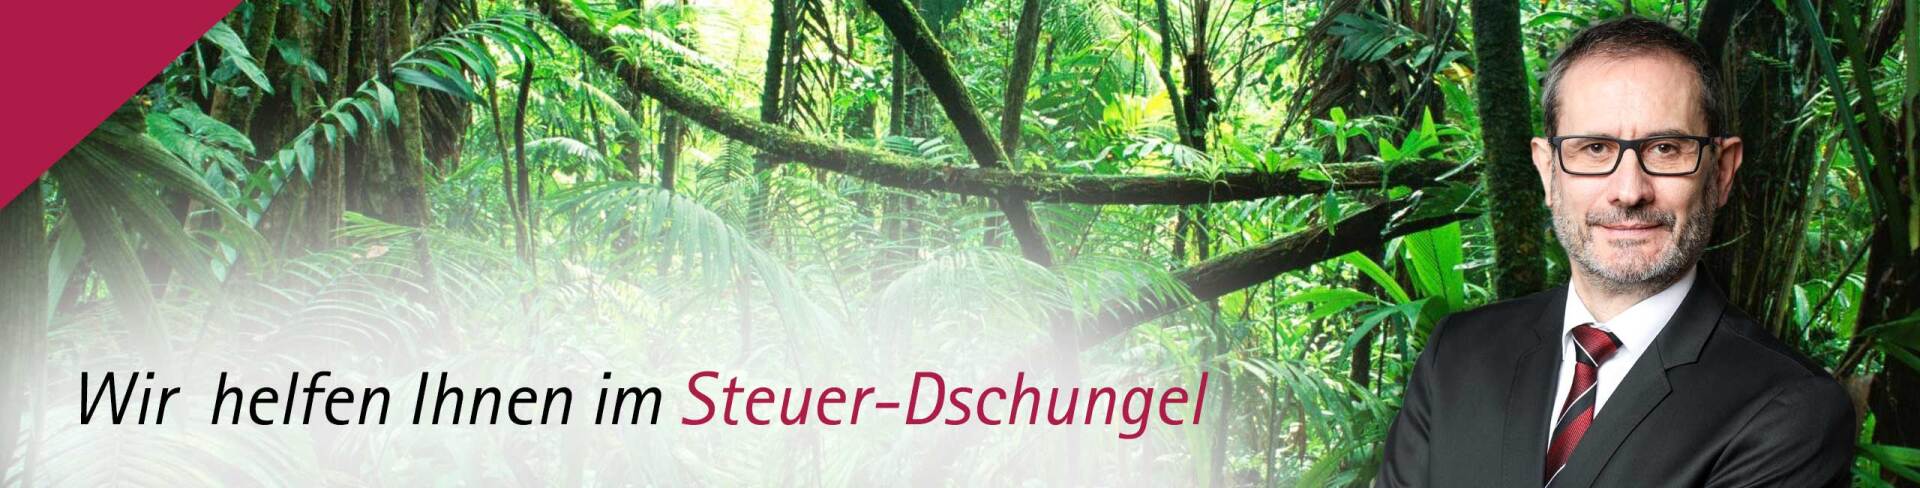 Dieter Schneider - Wir helfen Ihnen im Steuerdschungel